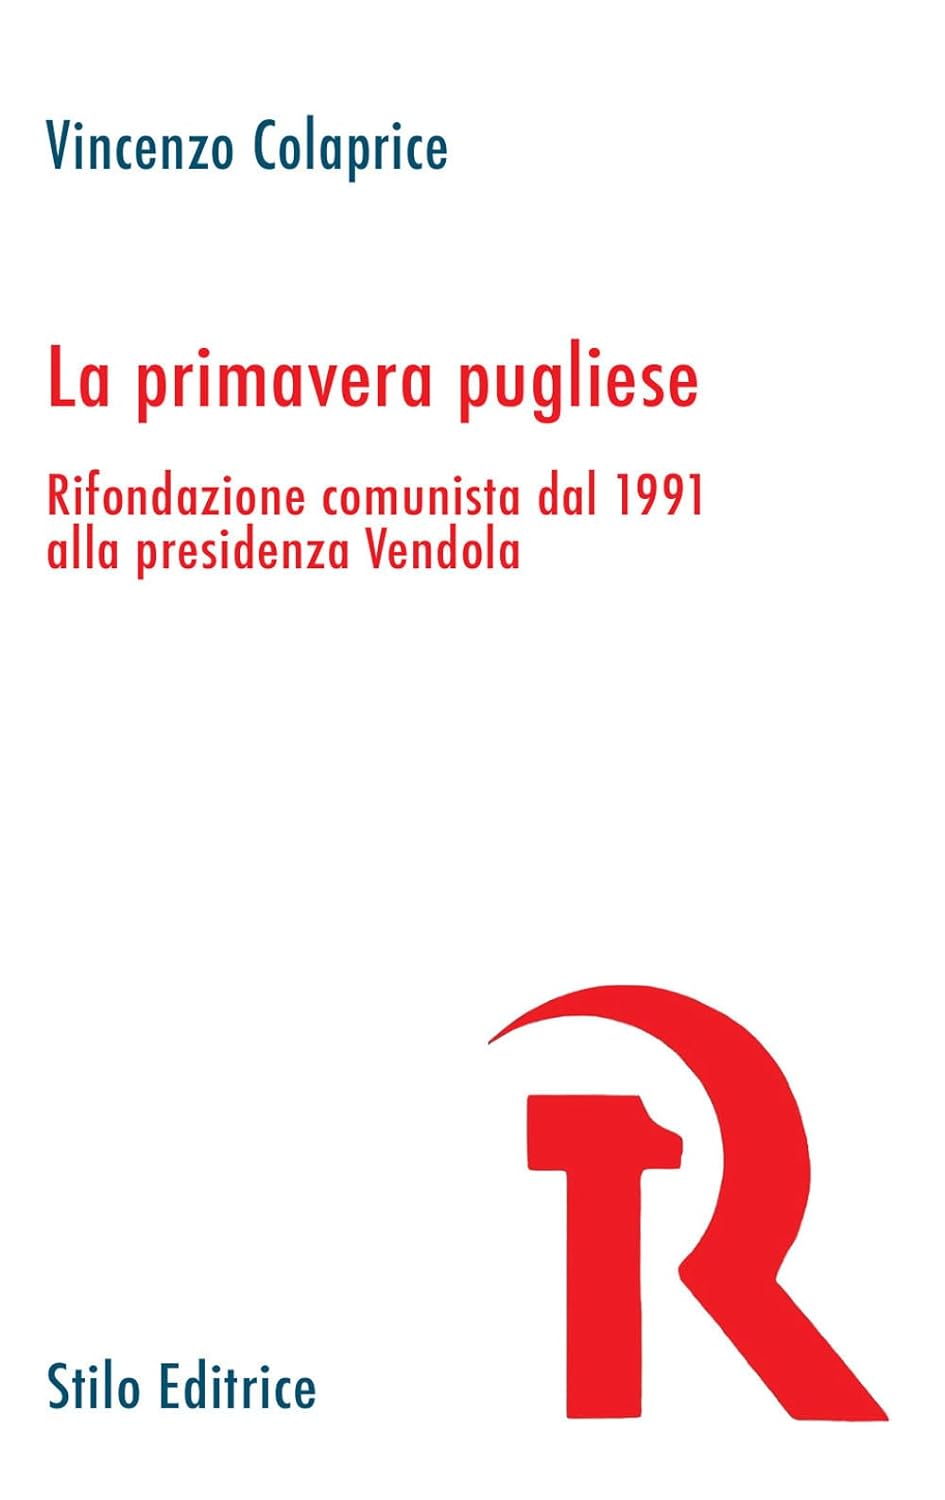 La primaversa pugliese di Vincenzo Colaprice, copertina del libro